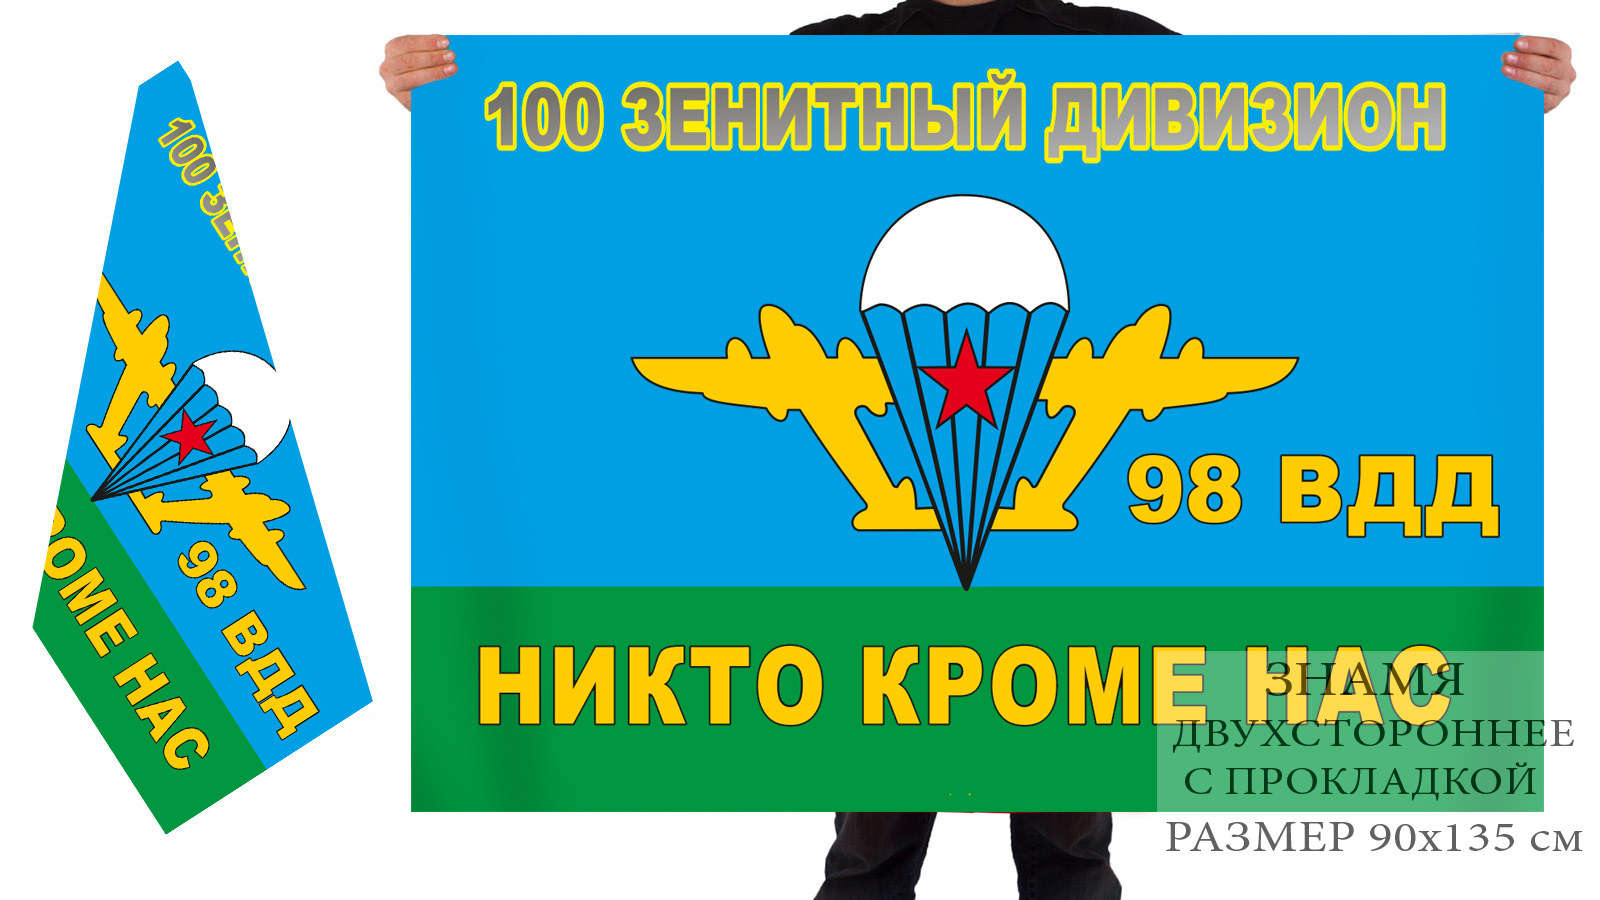 Двусторонний флаг 100 зенитного дивизиона 98 ВДД